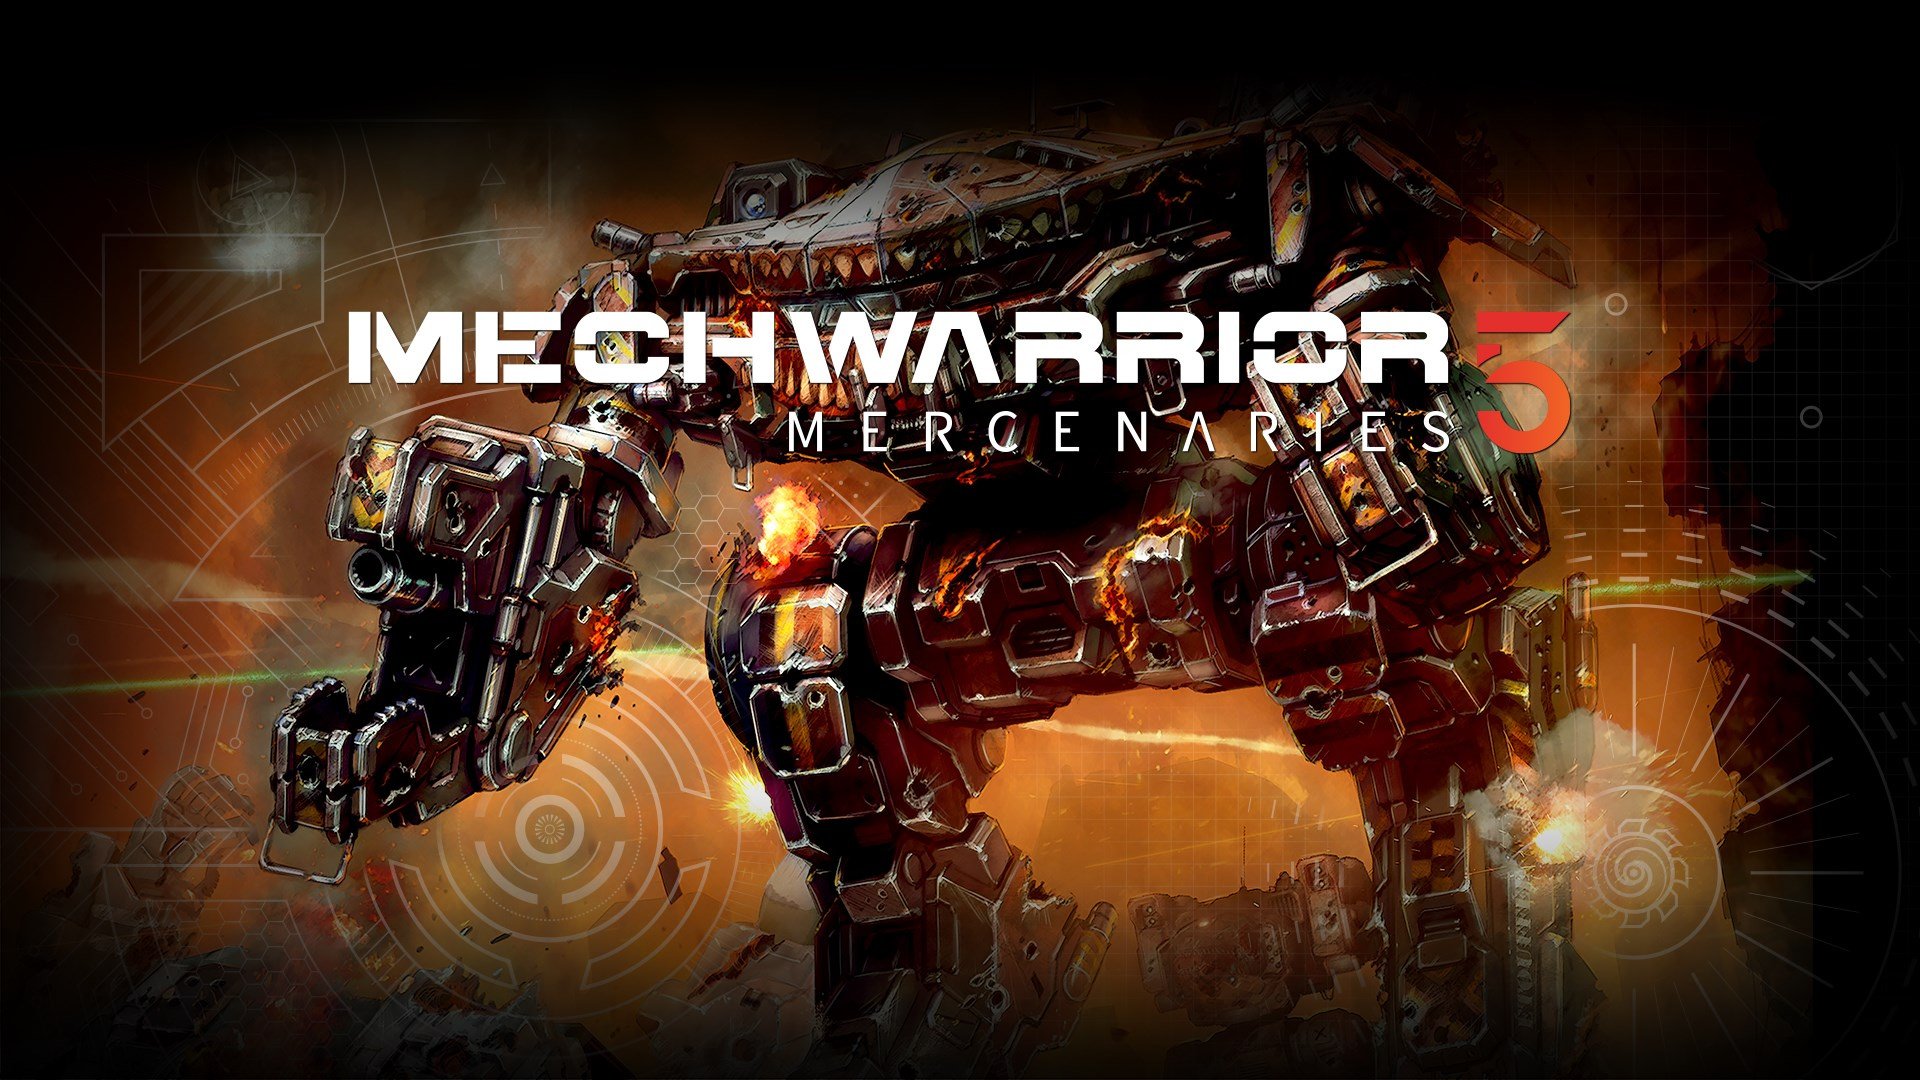 New Robot of MechWarrior 5 Wallpapers